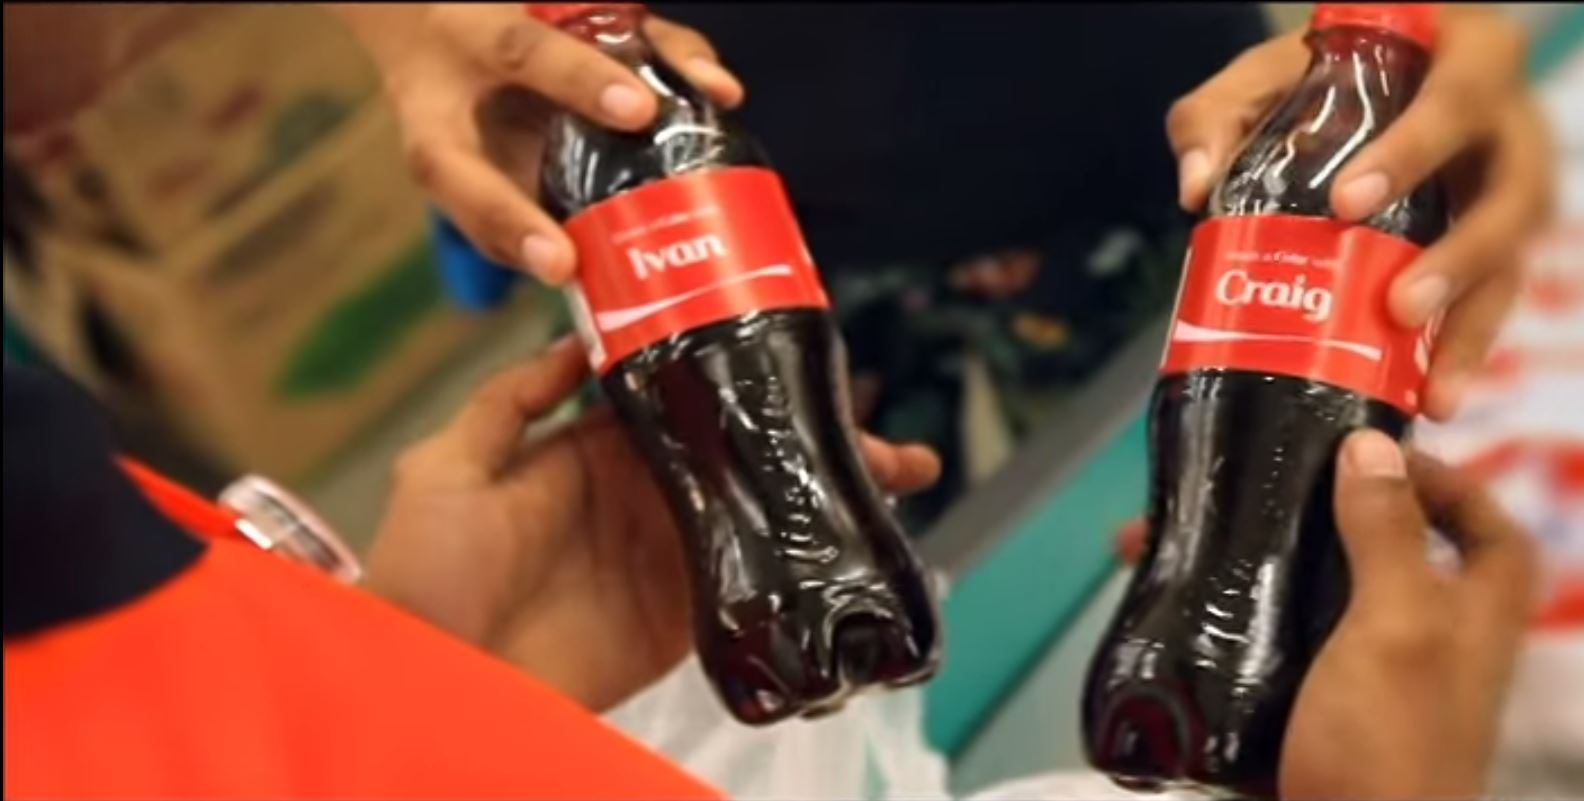 publicite coca cola